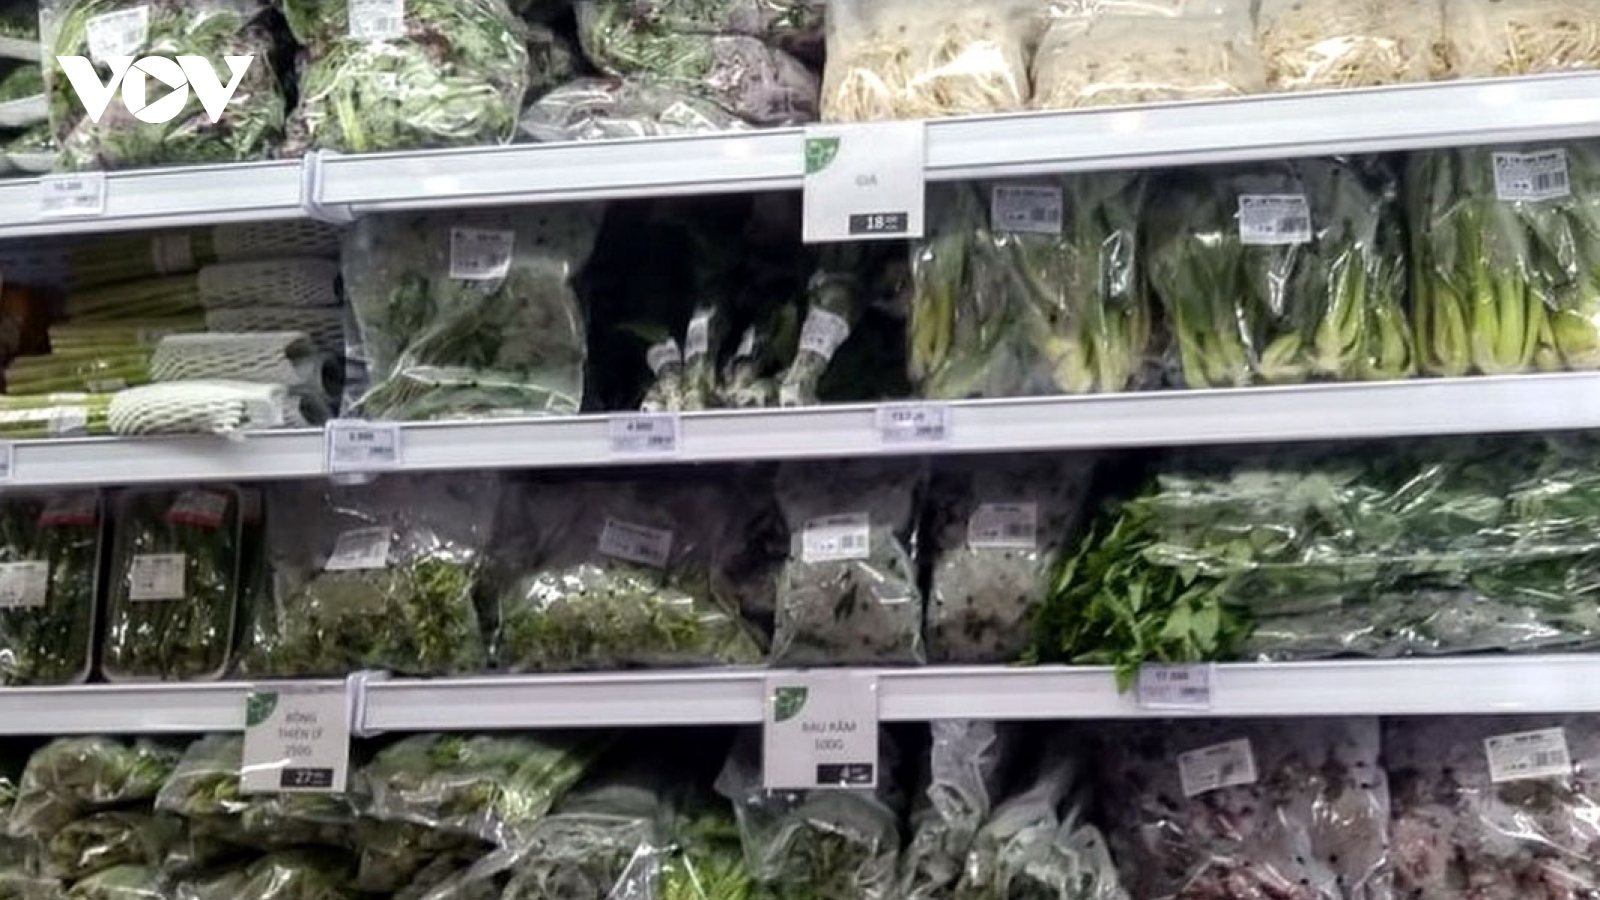 Thị trường Hà Lan: Cửa ngõ cho rau, củ, quả Việt Nam rộng cửa vào EU